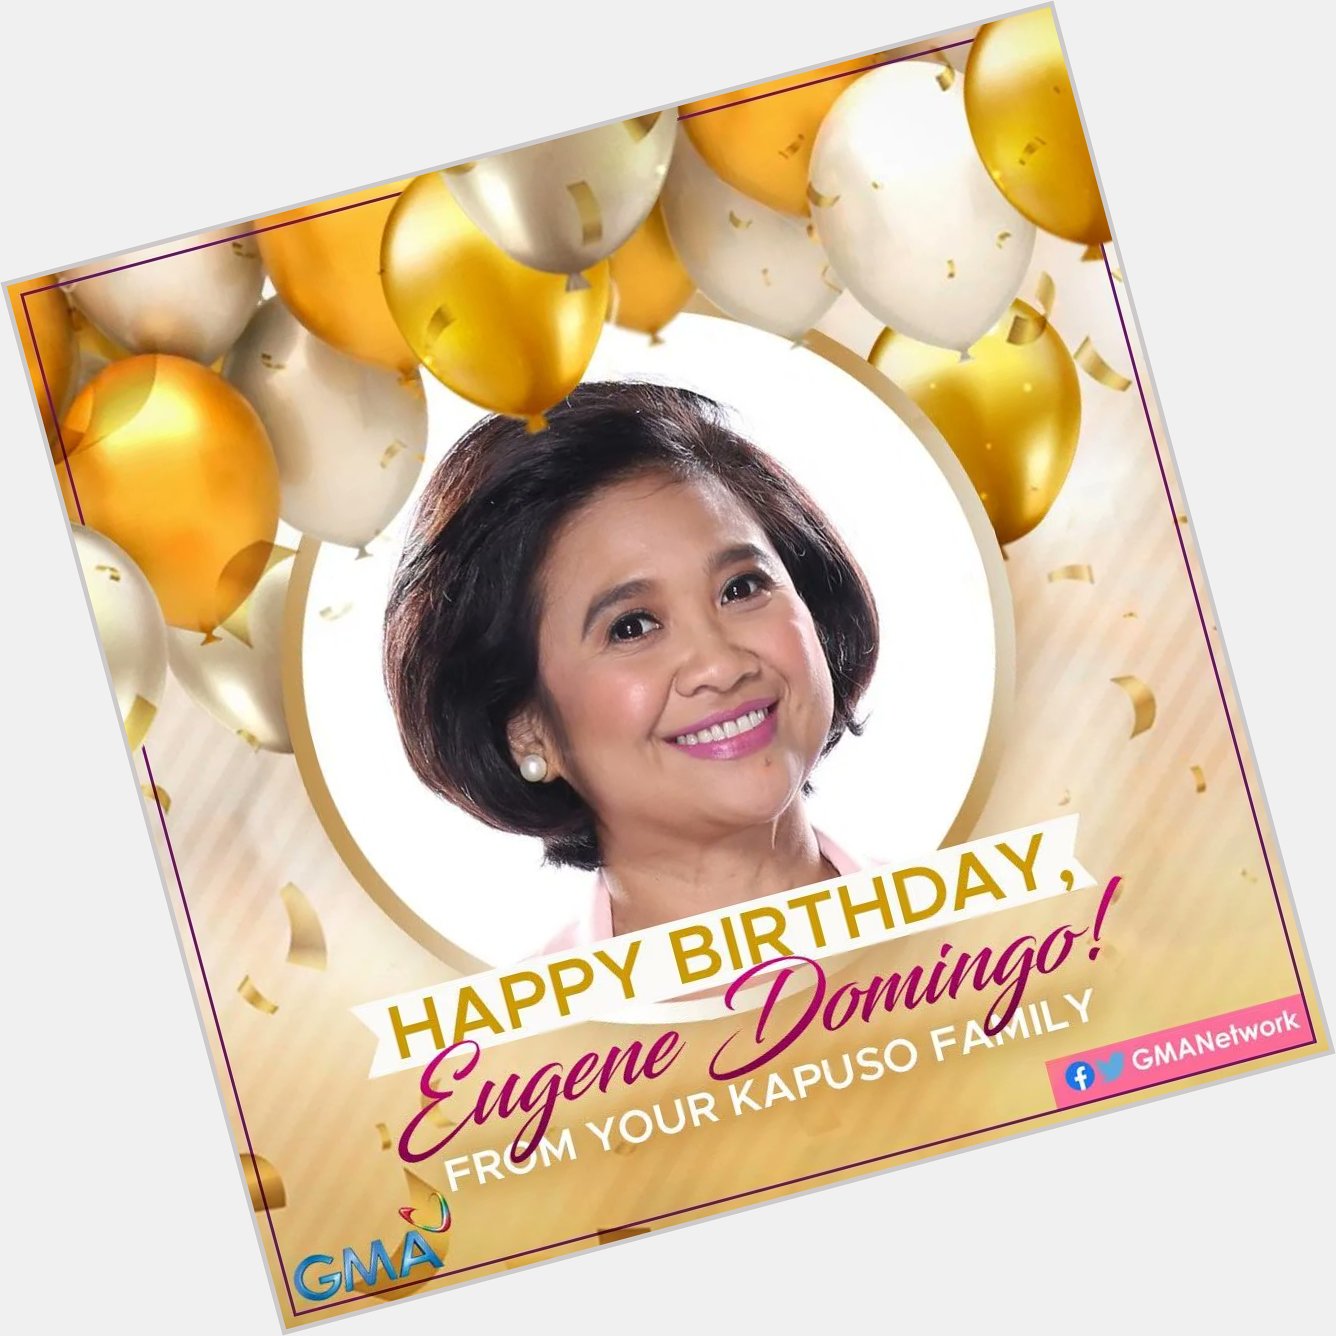 Happy Birthday Miss Eugene Domingo KapusoBrigade 